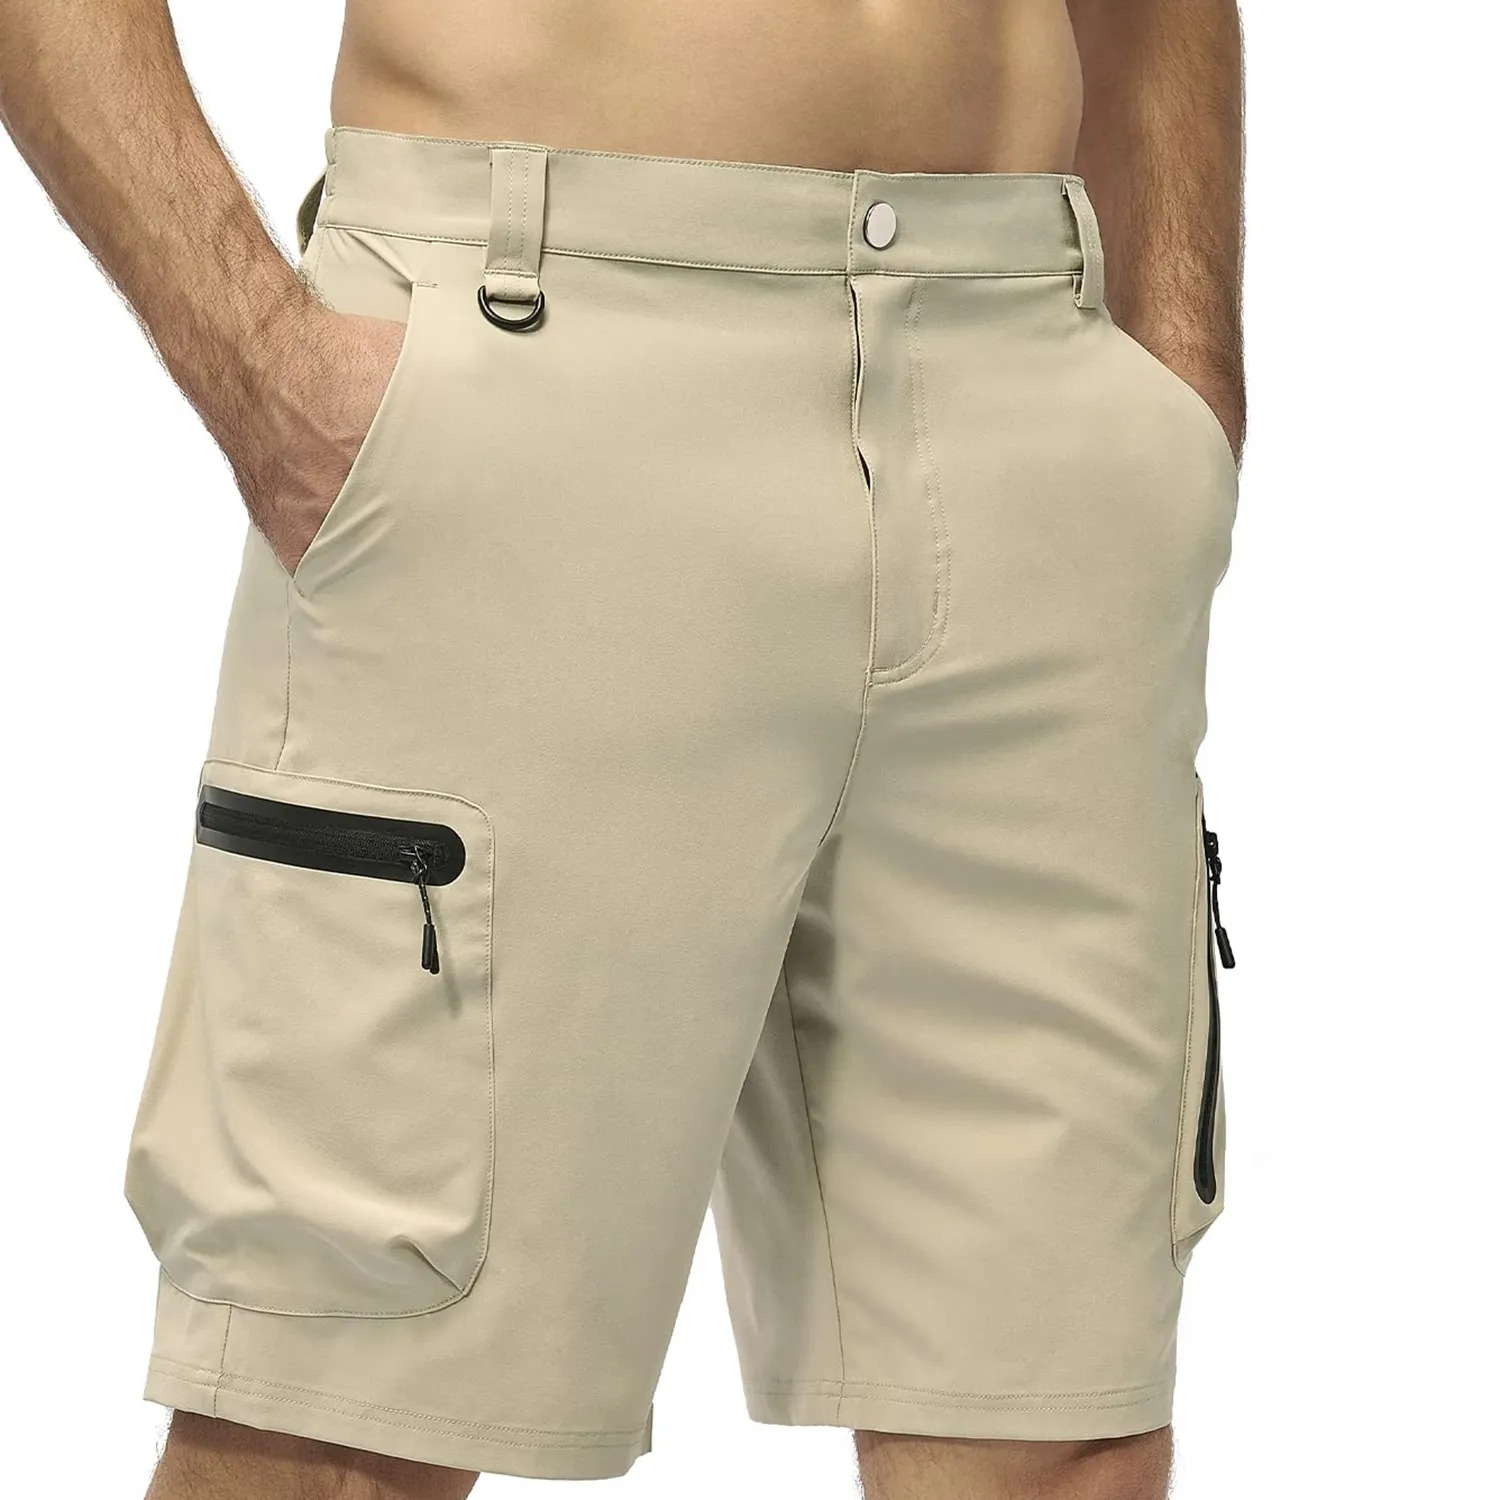 Pantalones cortos estampados de alta calidad para hombre, pantalones cortos deportivos para correr con tela elástica de cuatro vías, pantalones cortos para hombre, novedad